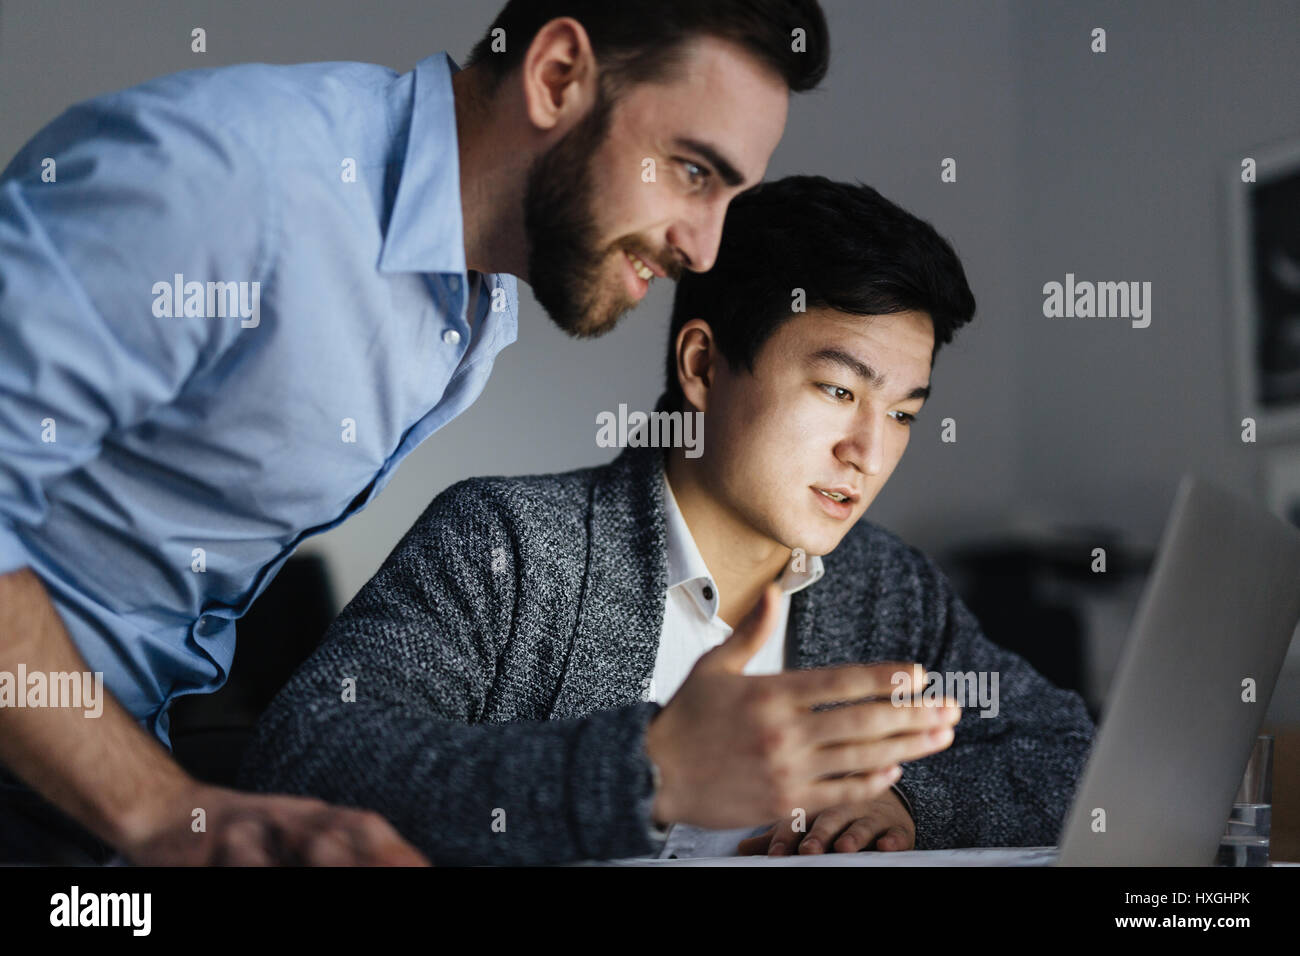 Ritratto di due lavoratori per ufficio, uno di essi asiatici, collaborando al progetto e utilizzando computer portatile in camera oscura a tarda notte, volti illuminati dalla luce della lampada Foto Stock